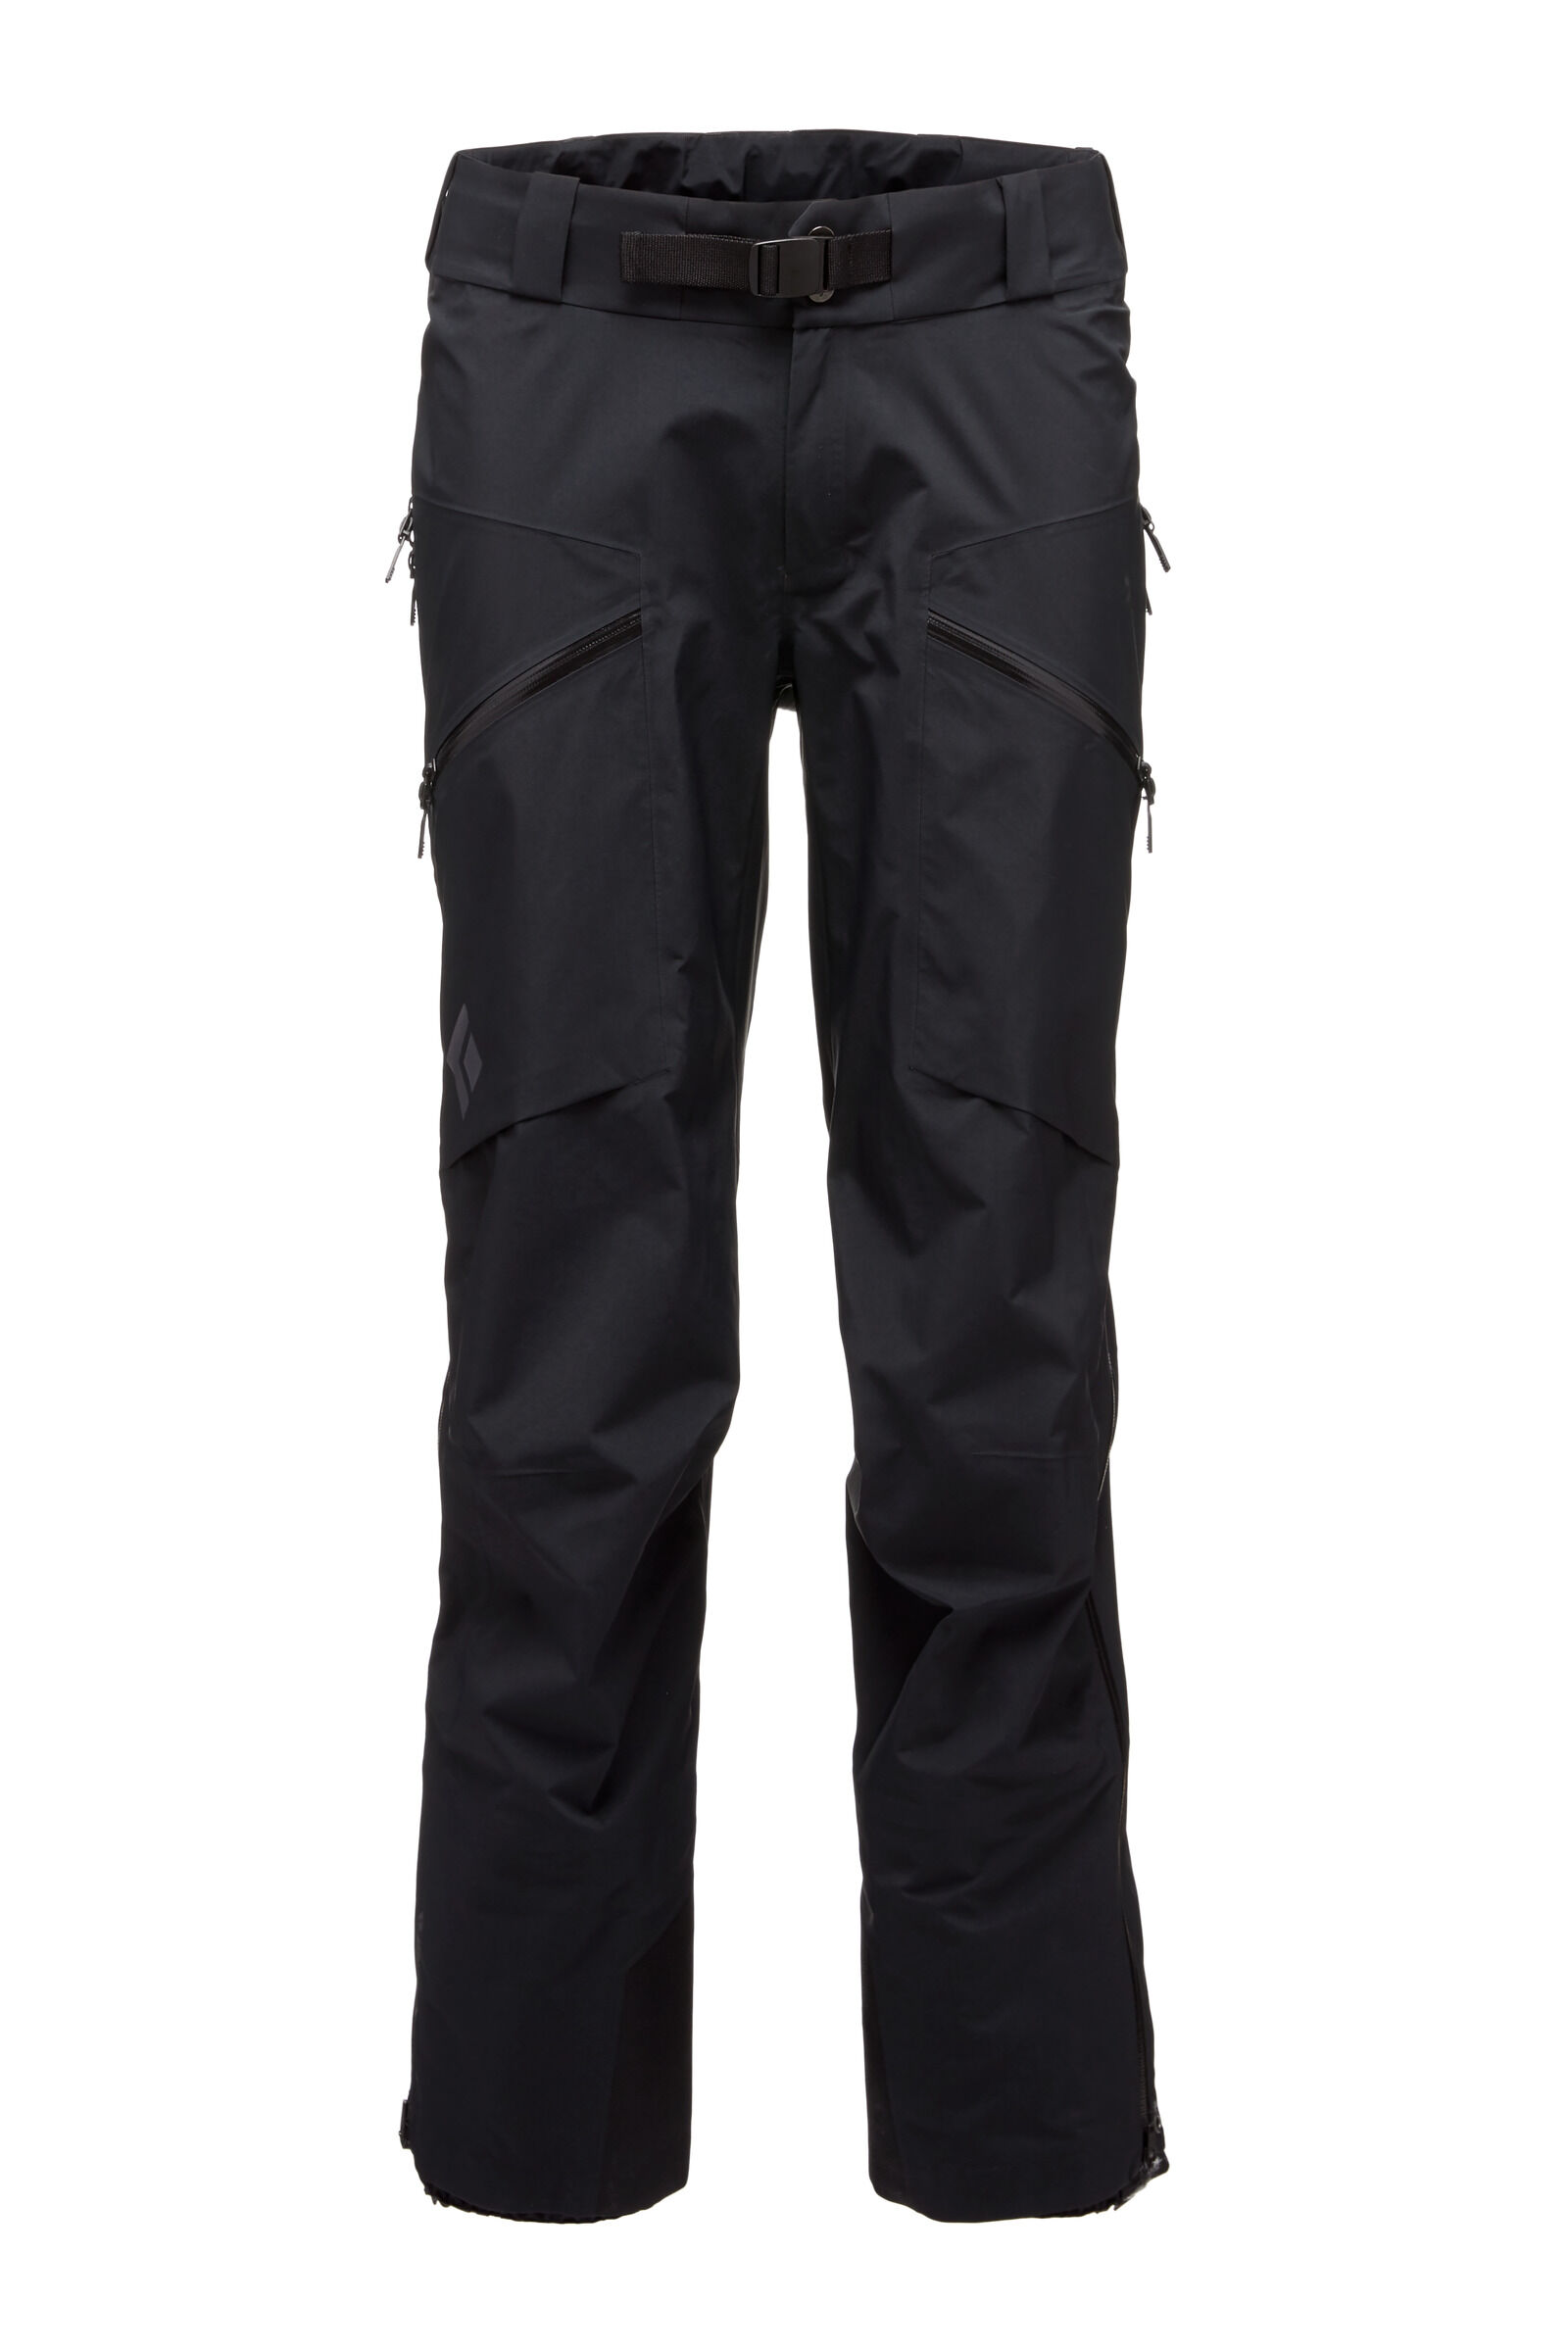 Black Diamond - Sharp End Shell Pants - Hardshell pants - Men's